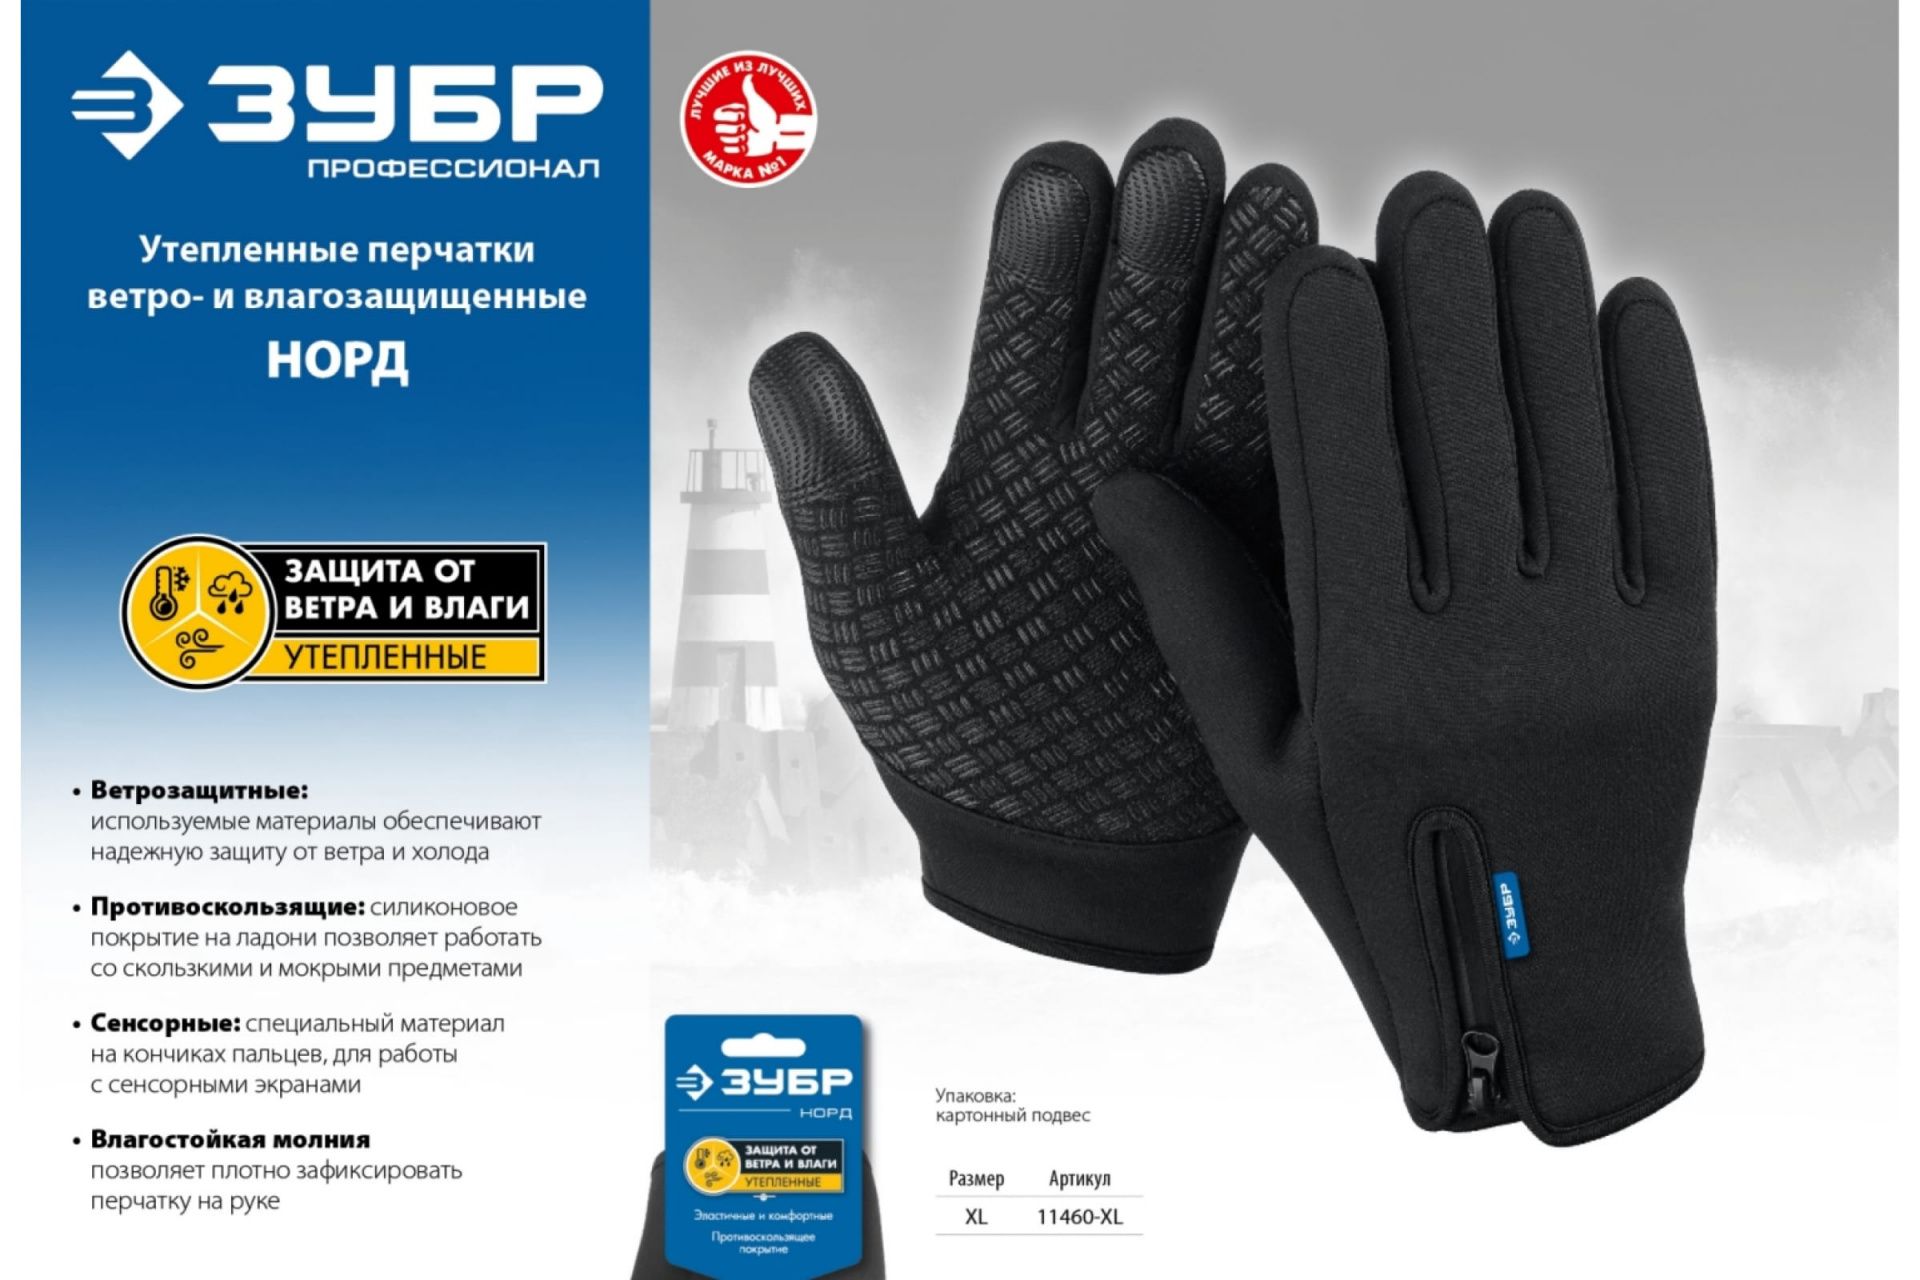 Утепленные ветро- и влаго- защищенные перчатки Норд, размер XL, ЗУБР 